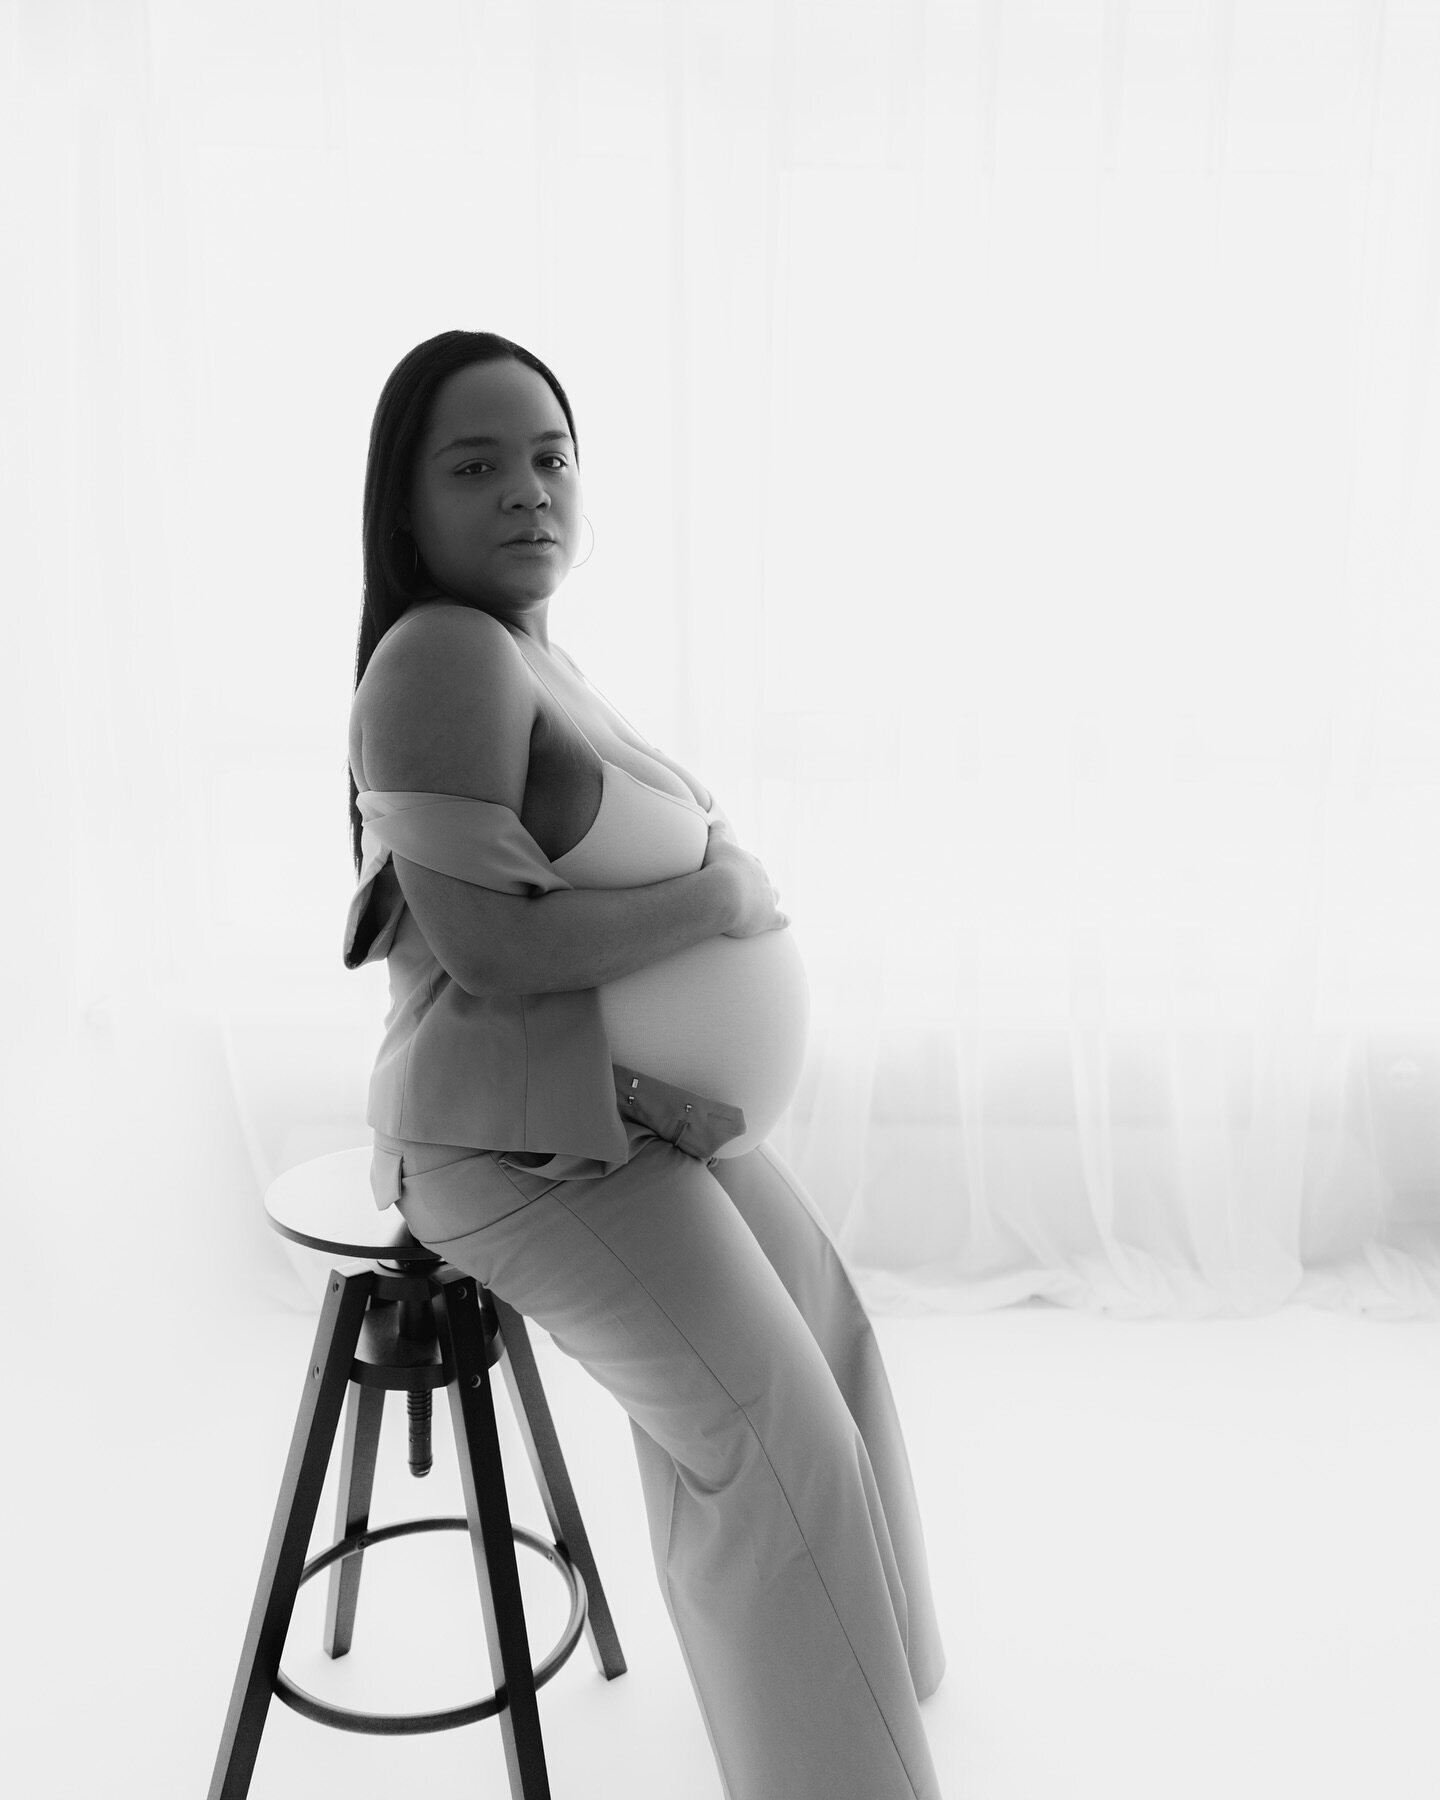 Proud Mummy to be ✨

#mummytobe #pregnantwoman #mutter #schwangerschaftsfotografie #ostschweiz #schweizerfotografen #newbornfotografie #neugeborenenshooting